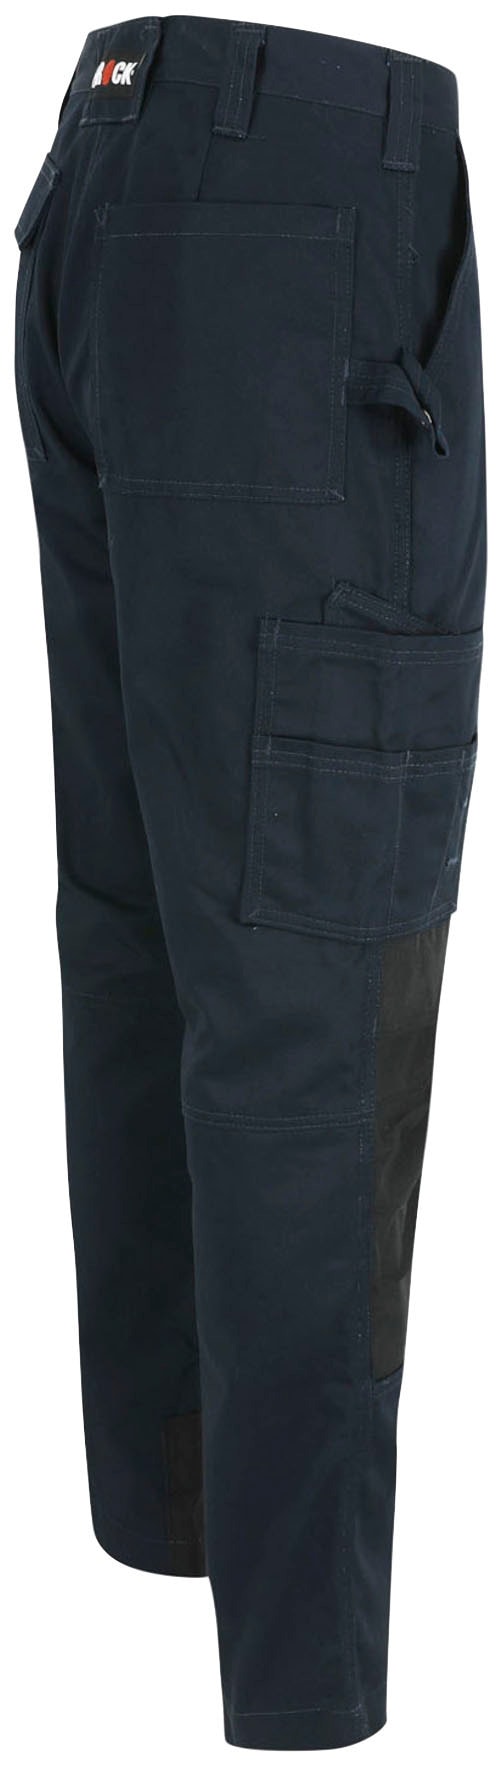 Herock Arbeitshose »Titan Hose«, Wasserabweisend, 12 Taschen, 3-Naht, verdeckter  Knopf, sehr angenehm online kaufen